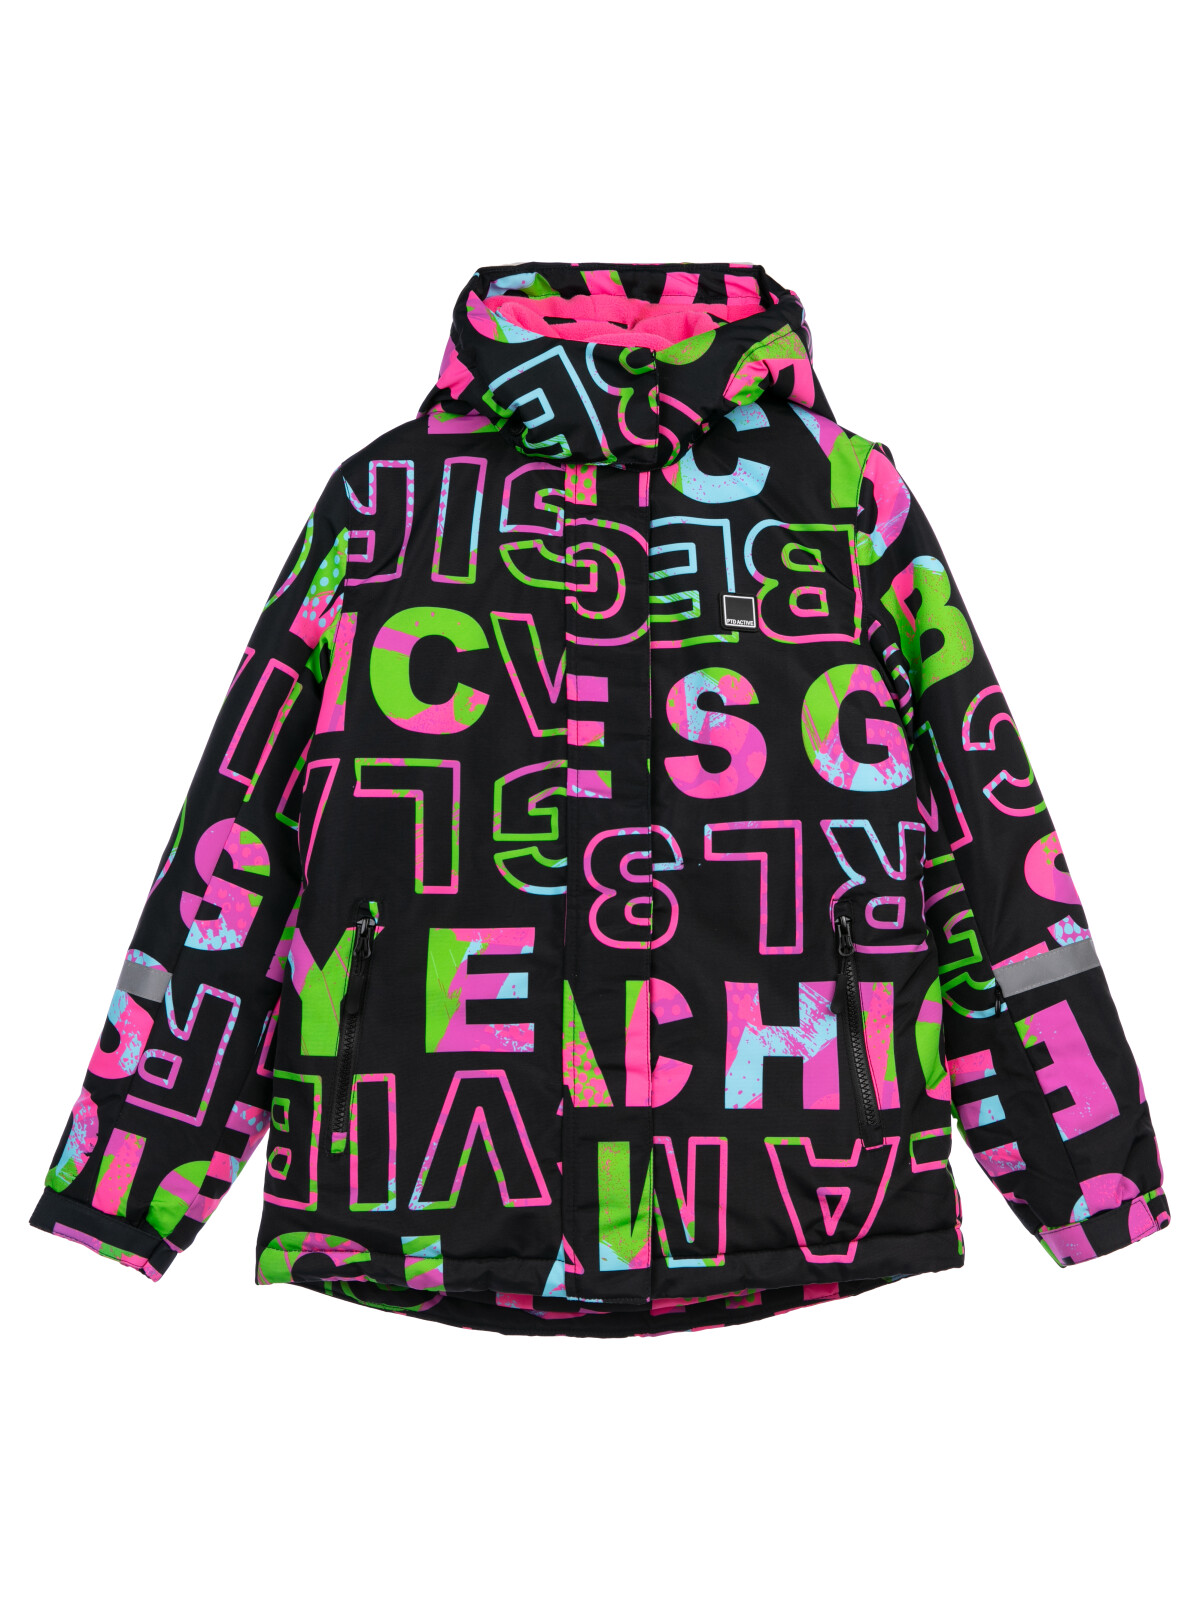 Куртка текстильная с полиуретановым покрытием для девочек PlayToday, цветной, 158